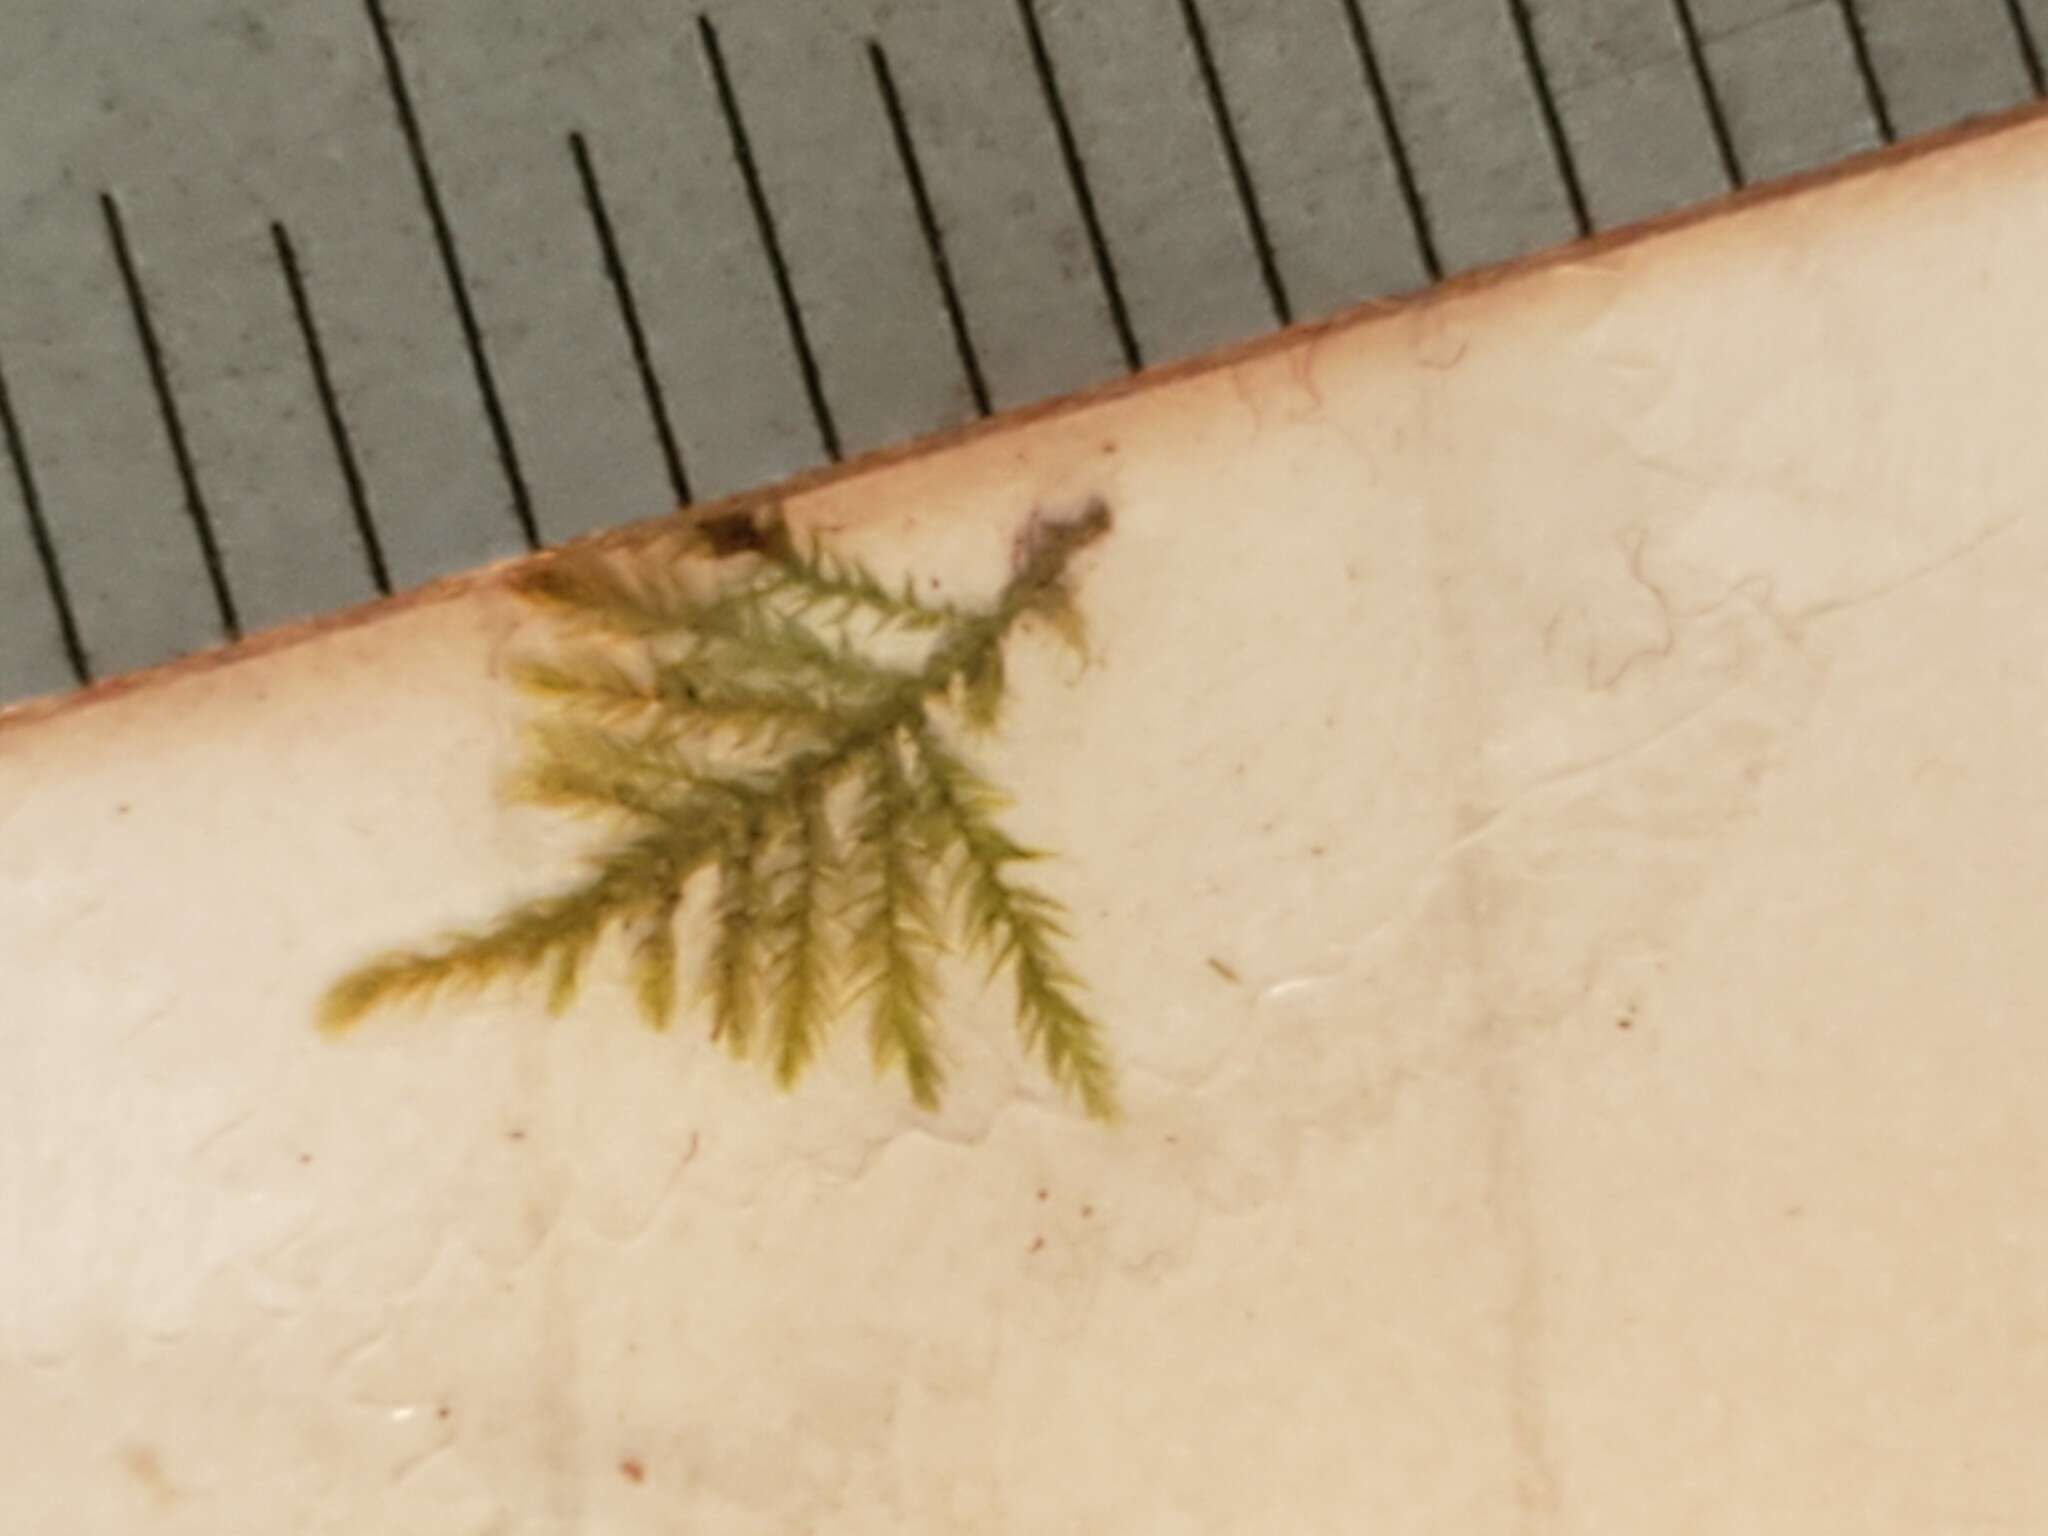 Image of Bolander's brachythecium moss